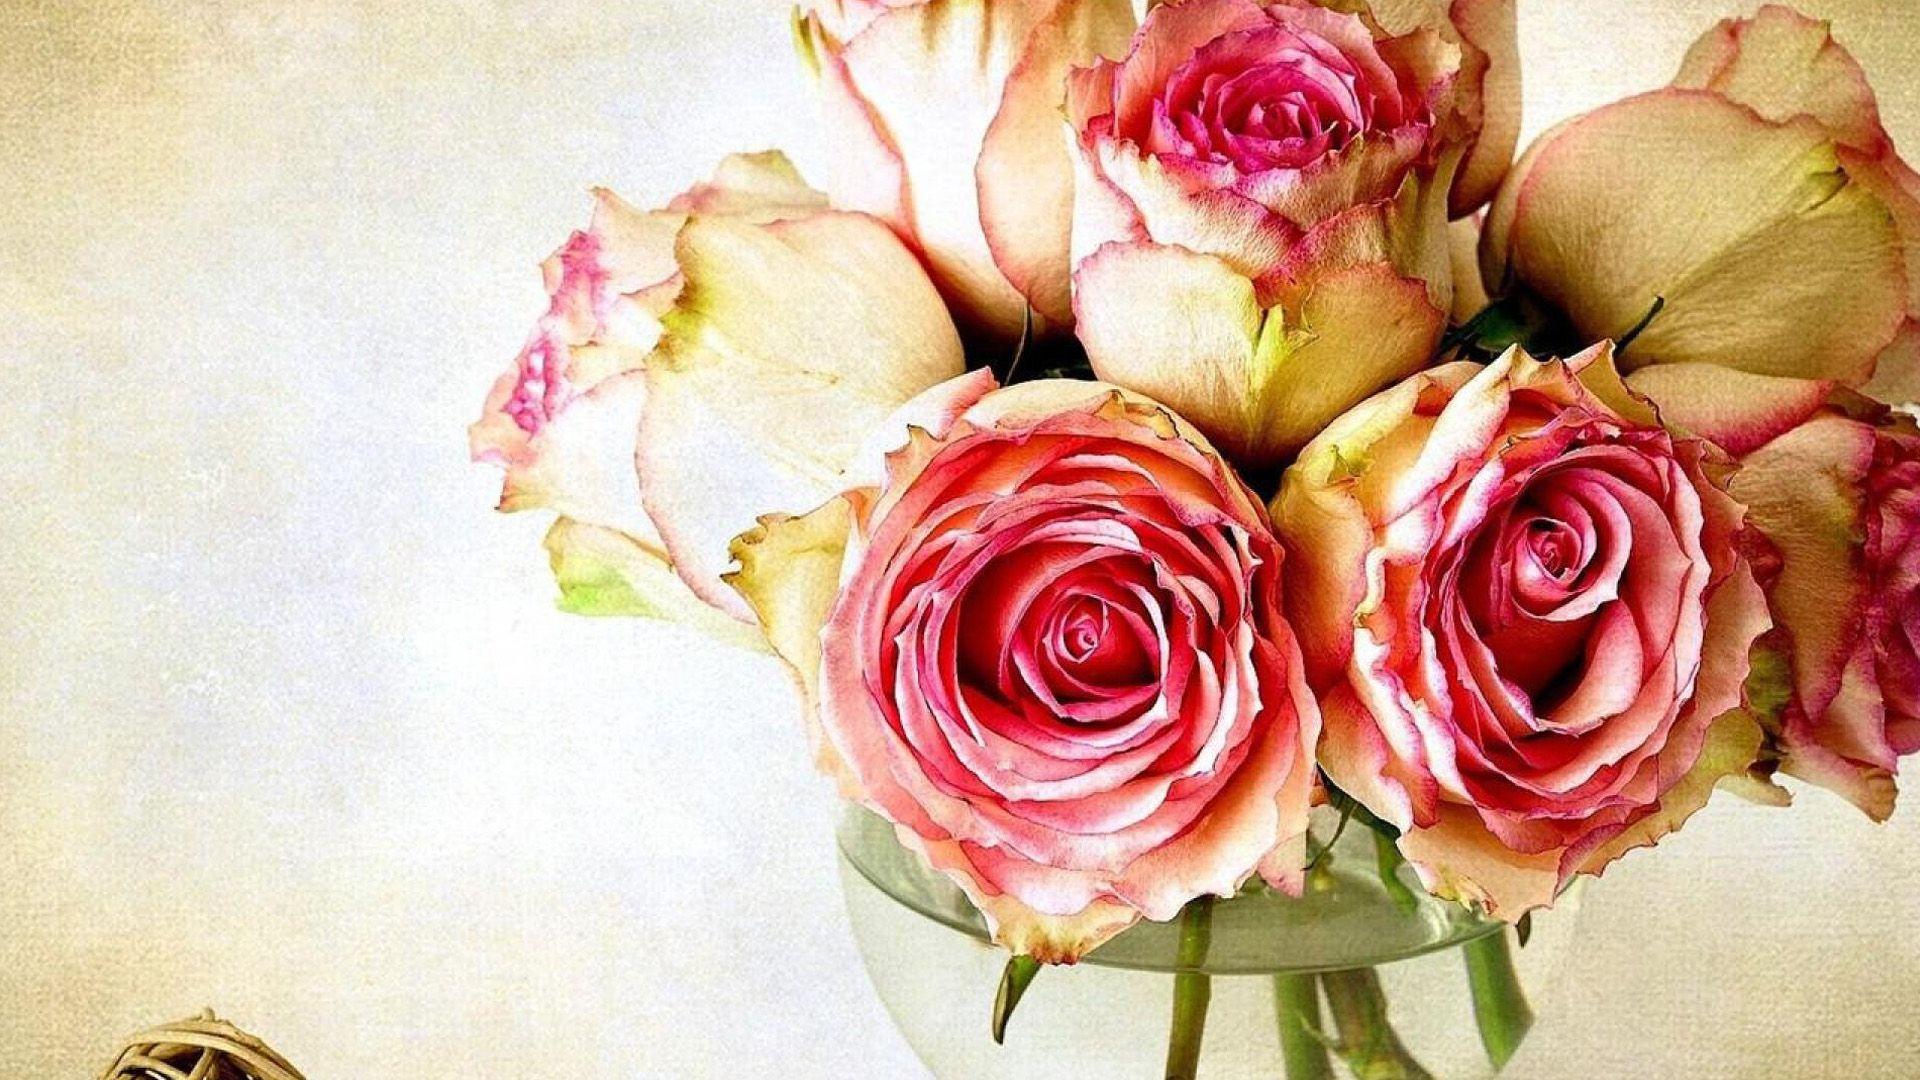 Rose Flower Wallpaper Vintage 1920x1080